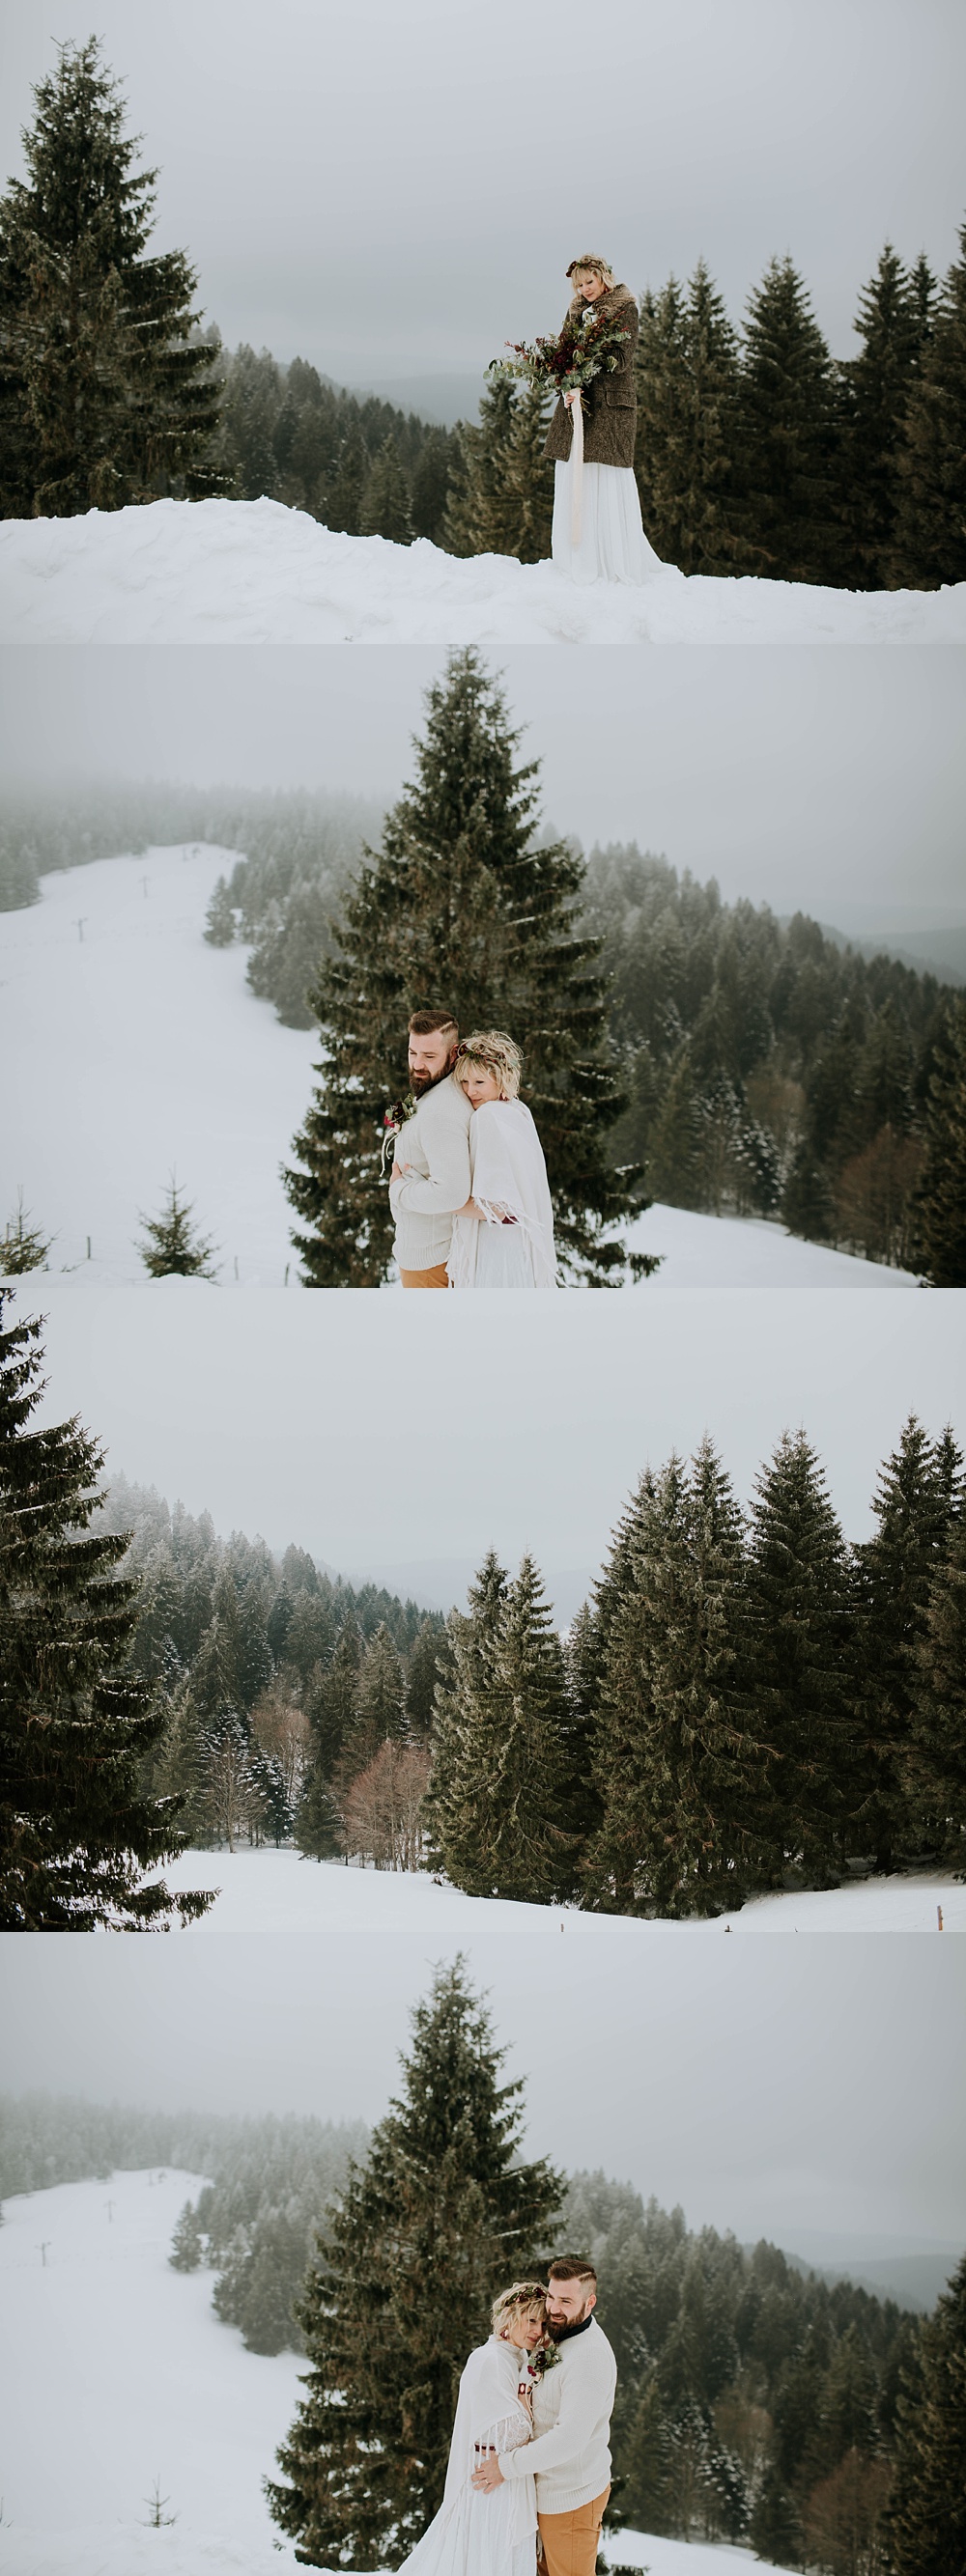 Mariage dans la neige Vosges